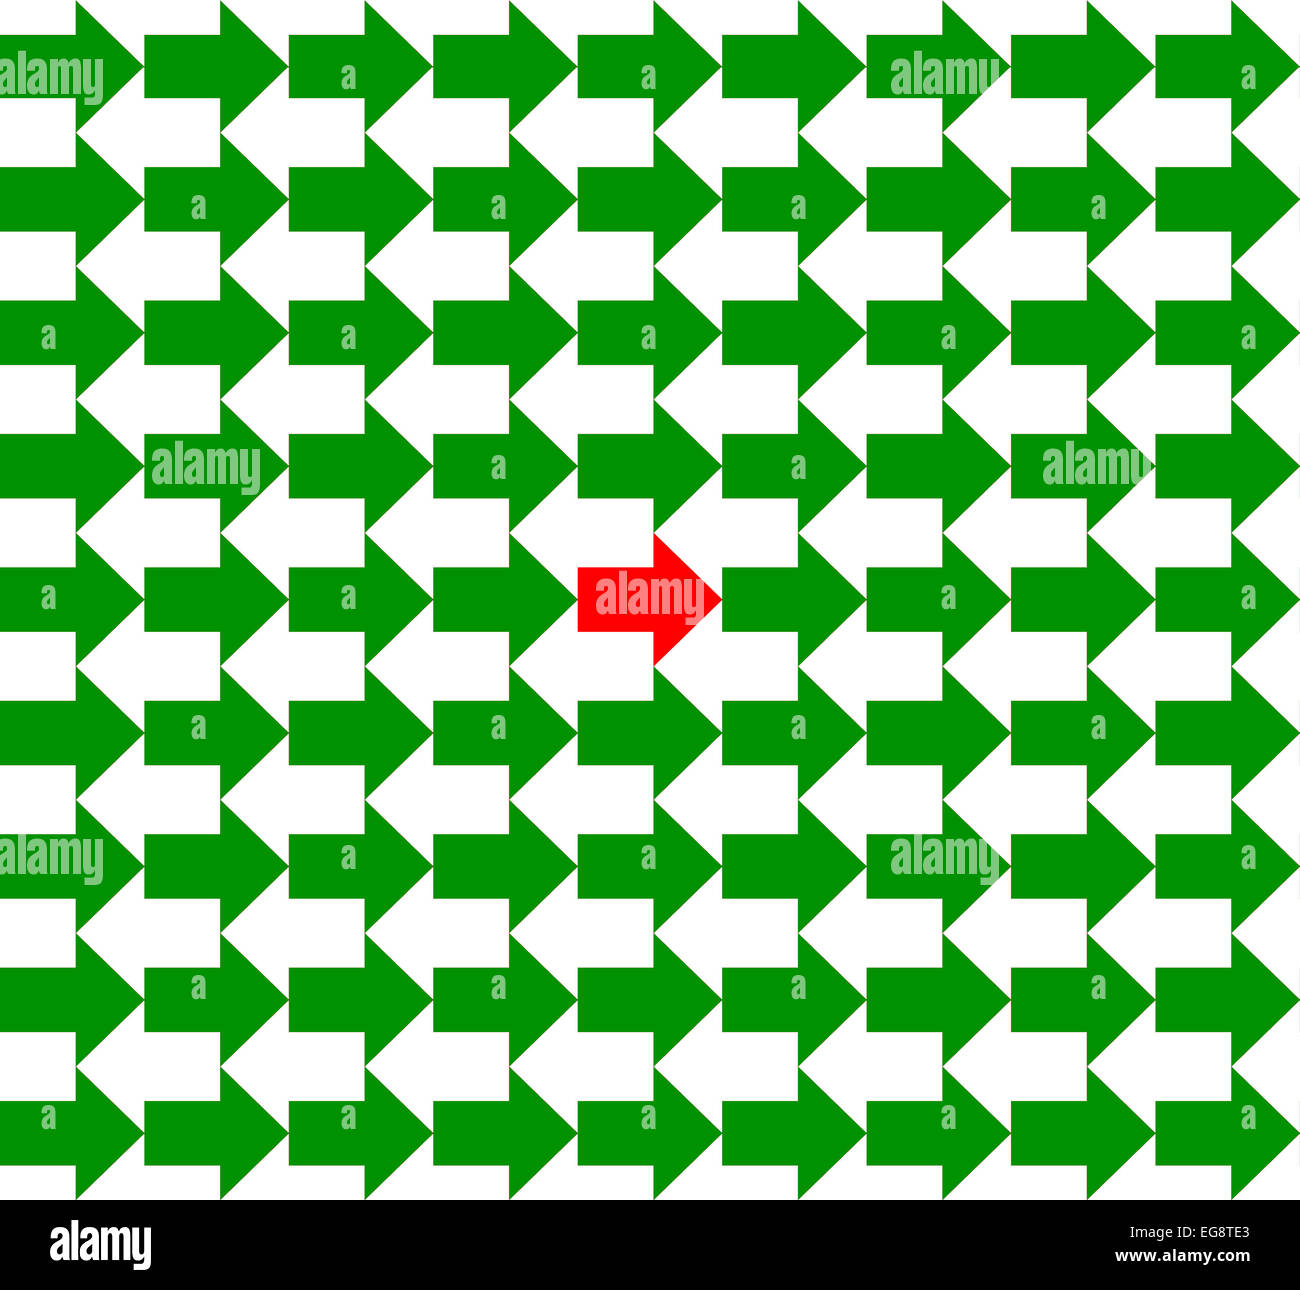 Grüne und weiße Pfeile in entgegengesetzte Richtungen, mit einem "roten" in der Mitte, nahtloses Muster Stockfoto